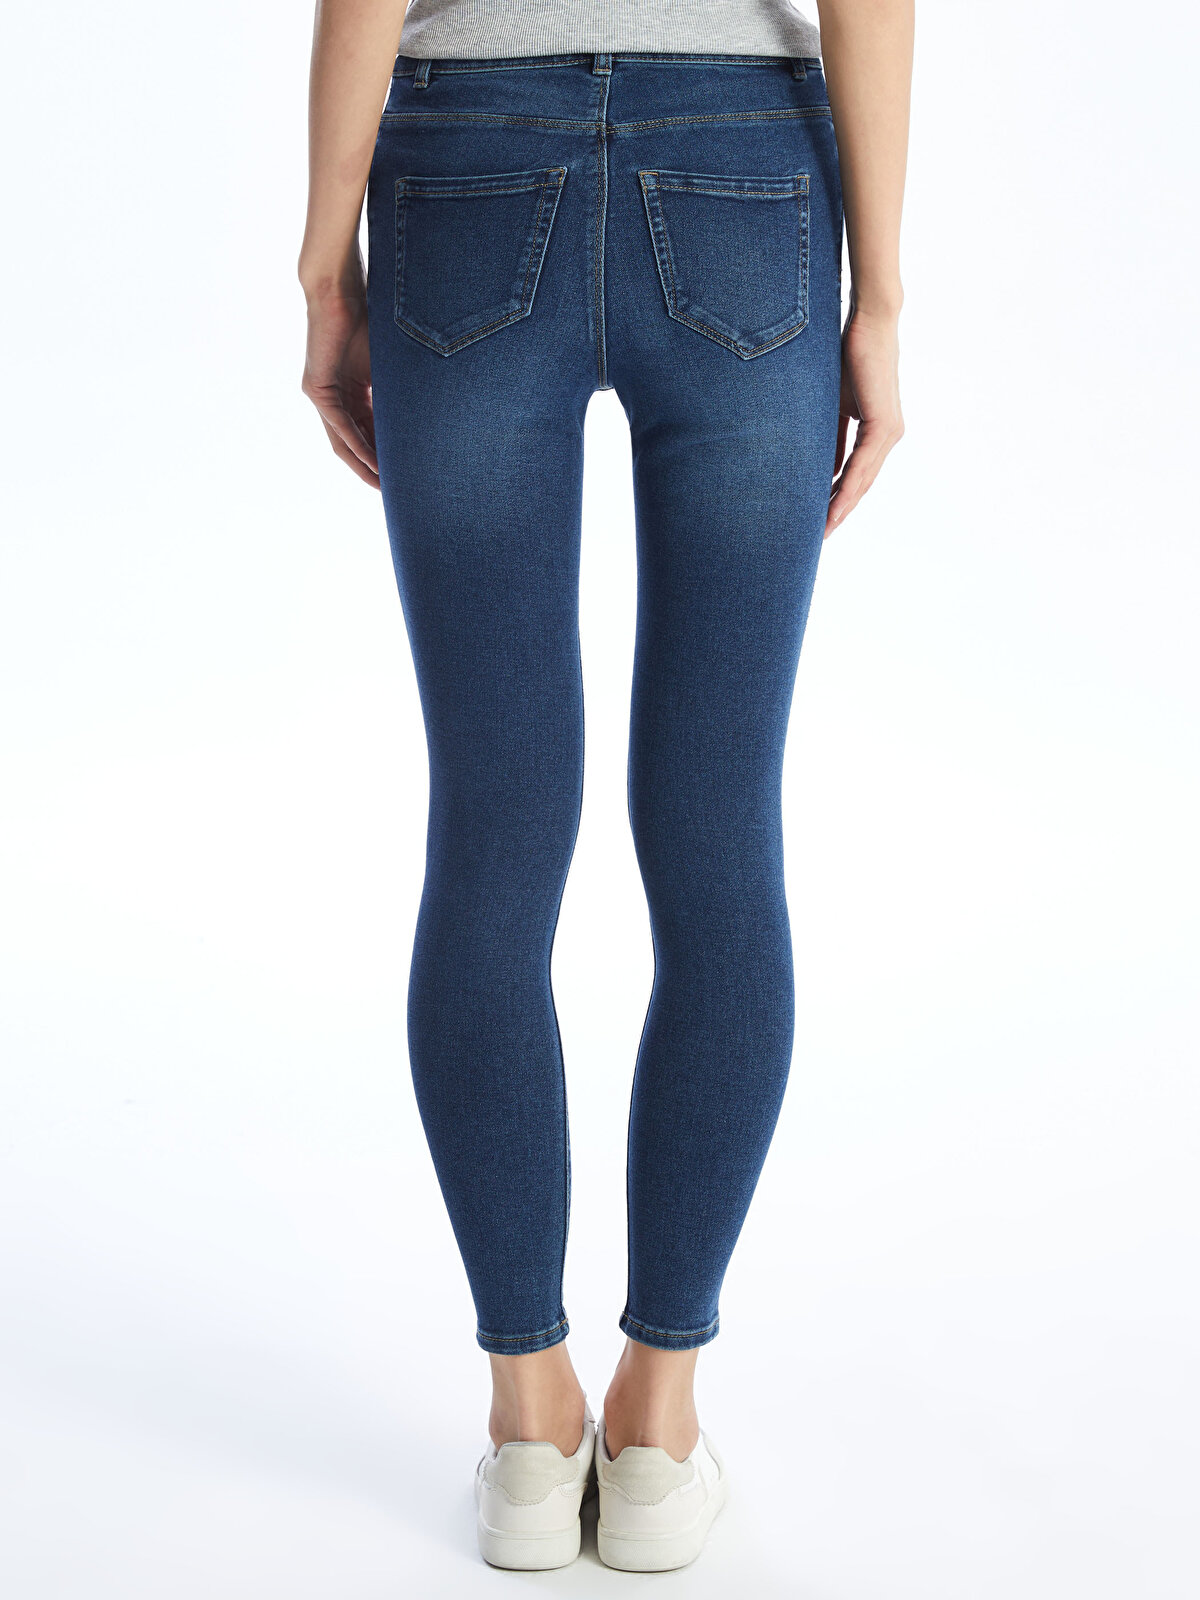 Skinny Fit Women Jeans -S40942Z8-309 - S40942Z8-309 - LC Waikiki